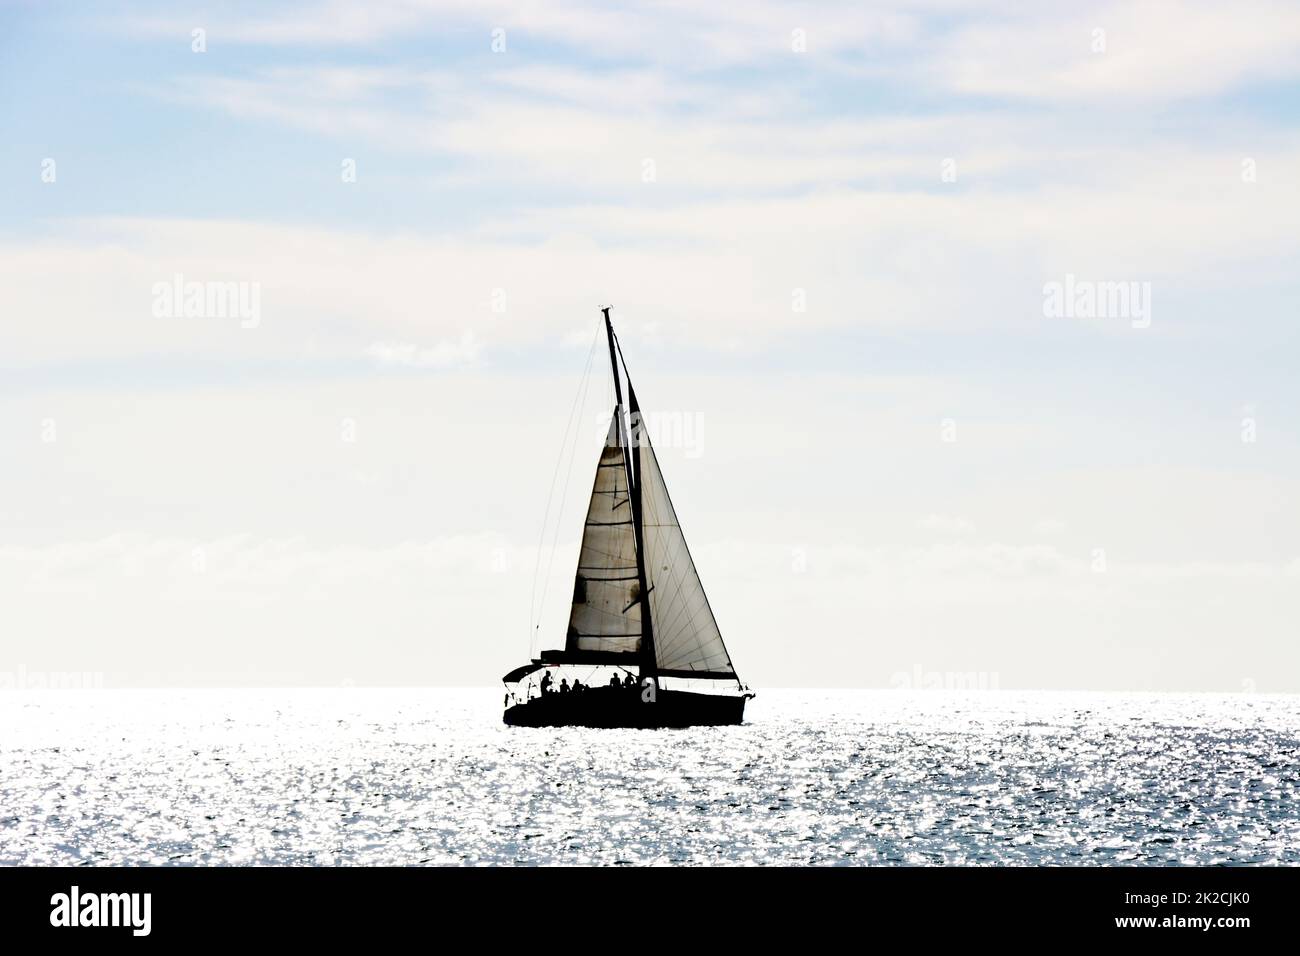 Segelschiff im Gegenlicht - Symbolbild fÃ¼r Freiheit und Fernweh Foto Stock